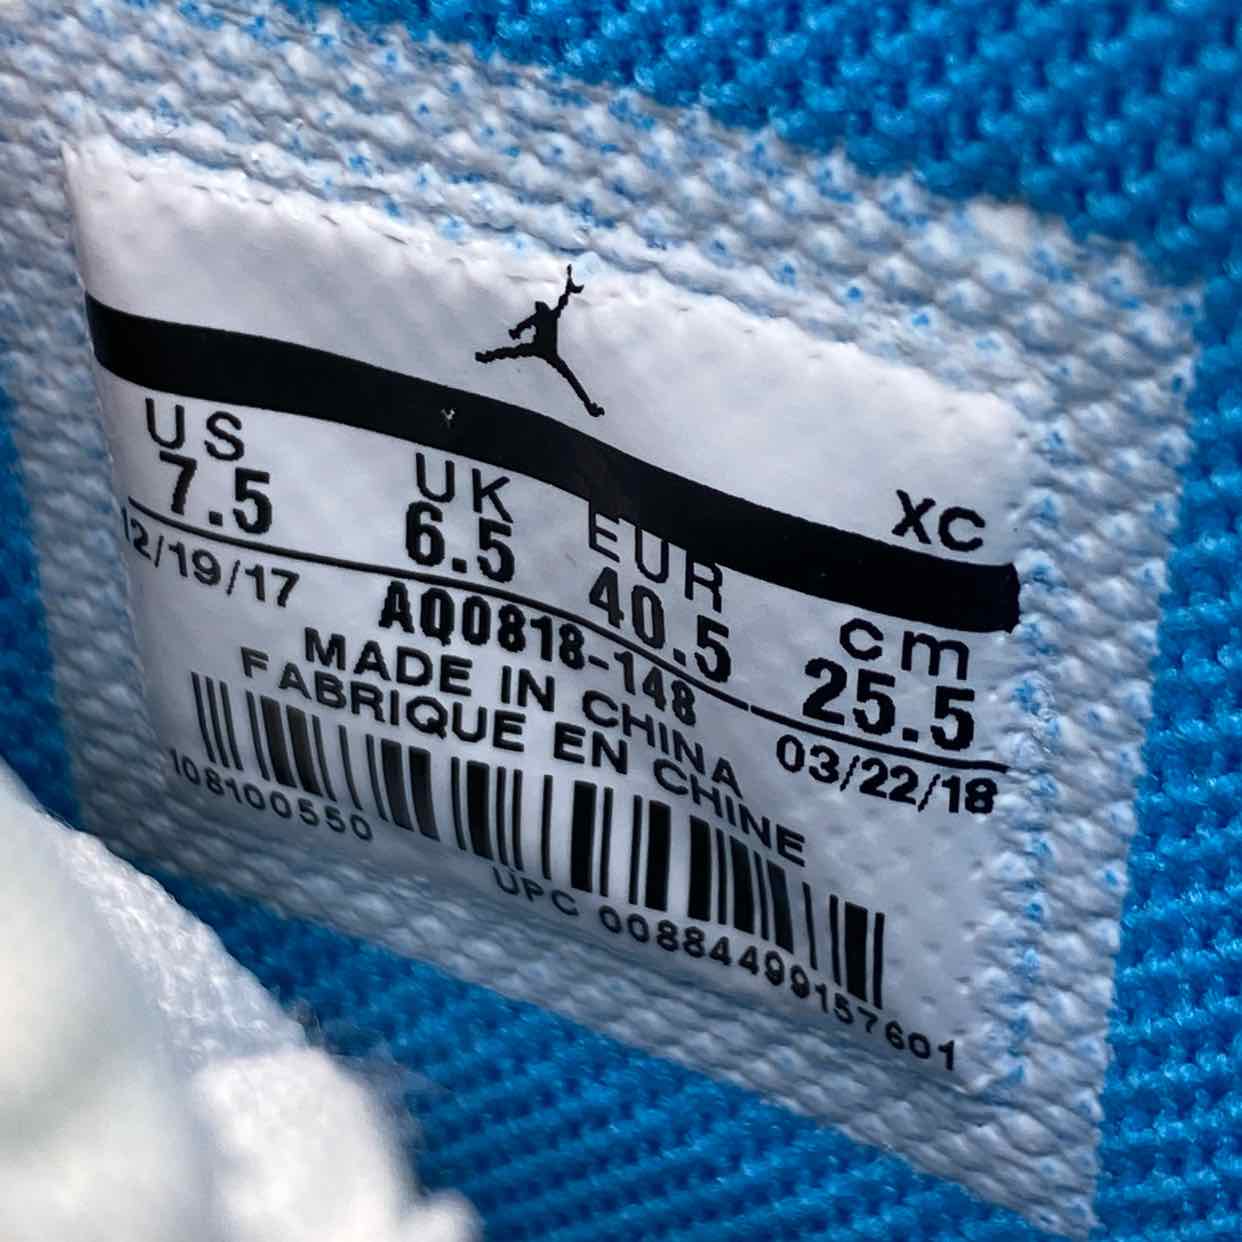 Air Jordan 1 Retro High OG "Off White Unc" 2018 New Size 7.5